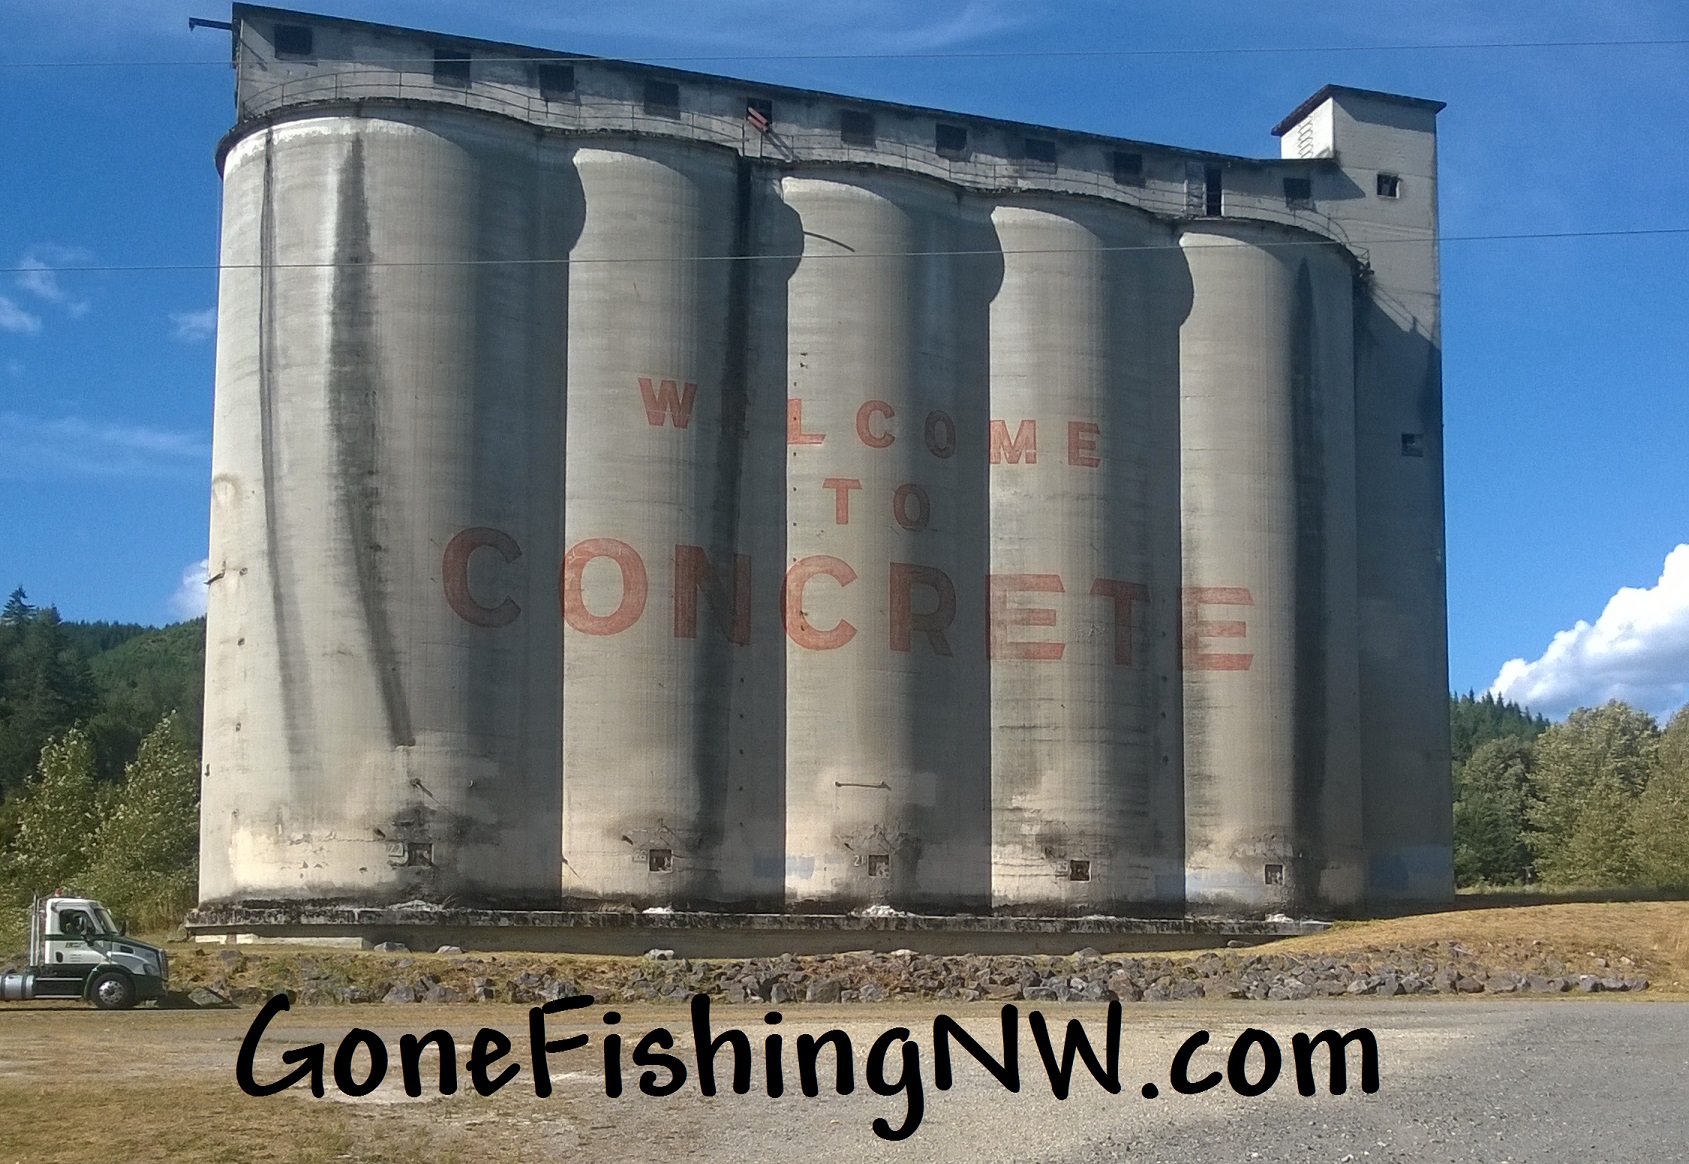 Concrete Washington – Gone Fishing Northwest